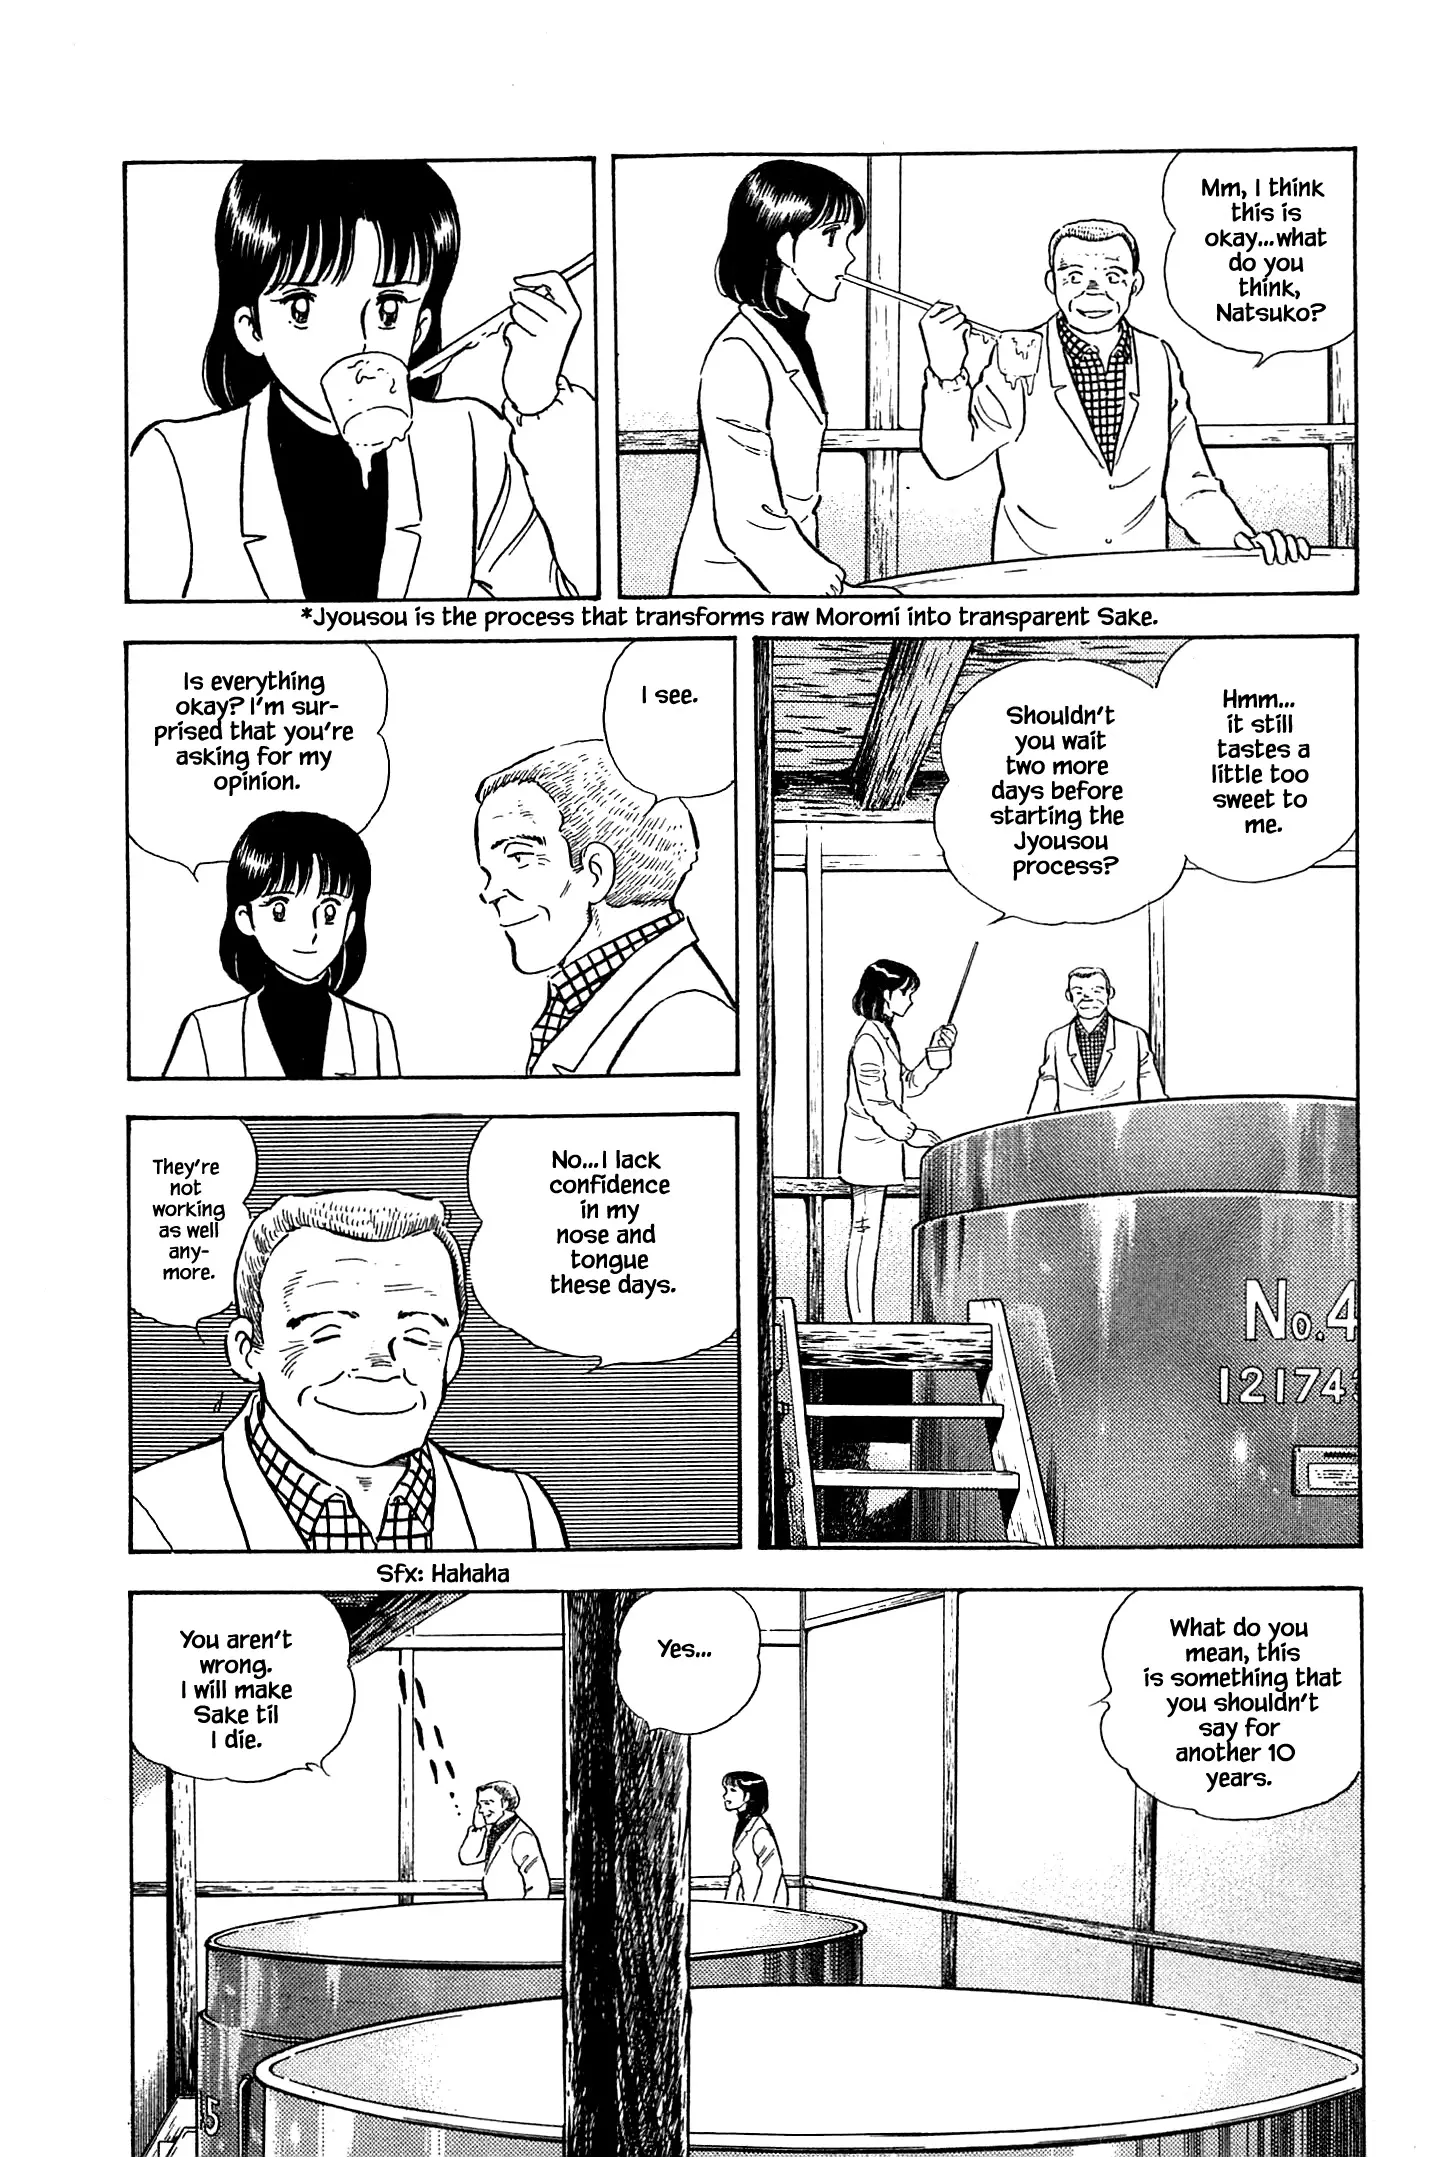 Natsuko's Sake - 49 page 6-f7c2d165